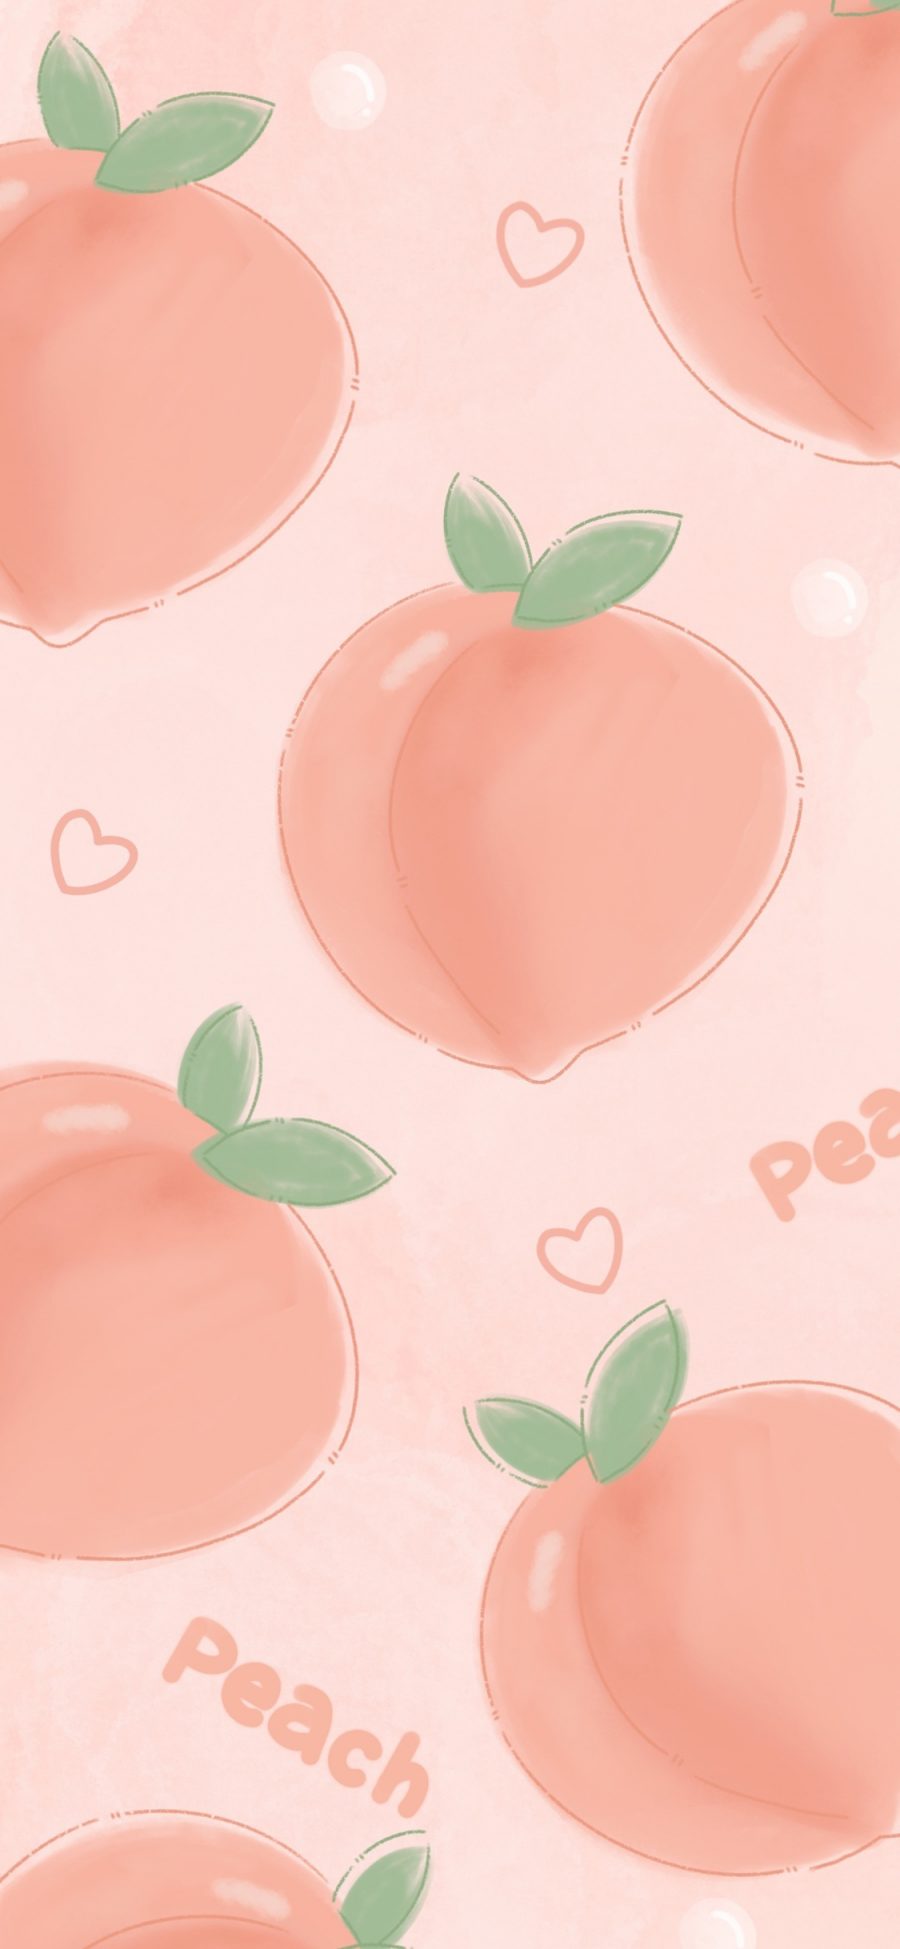 [2436×1125]插图 水蜜桃 桃子 粉色 平铺 苹果手机动漫壁纸图片